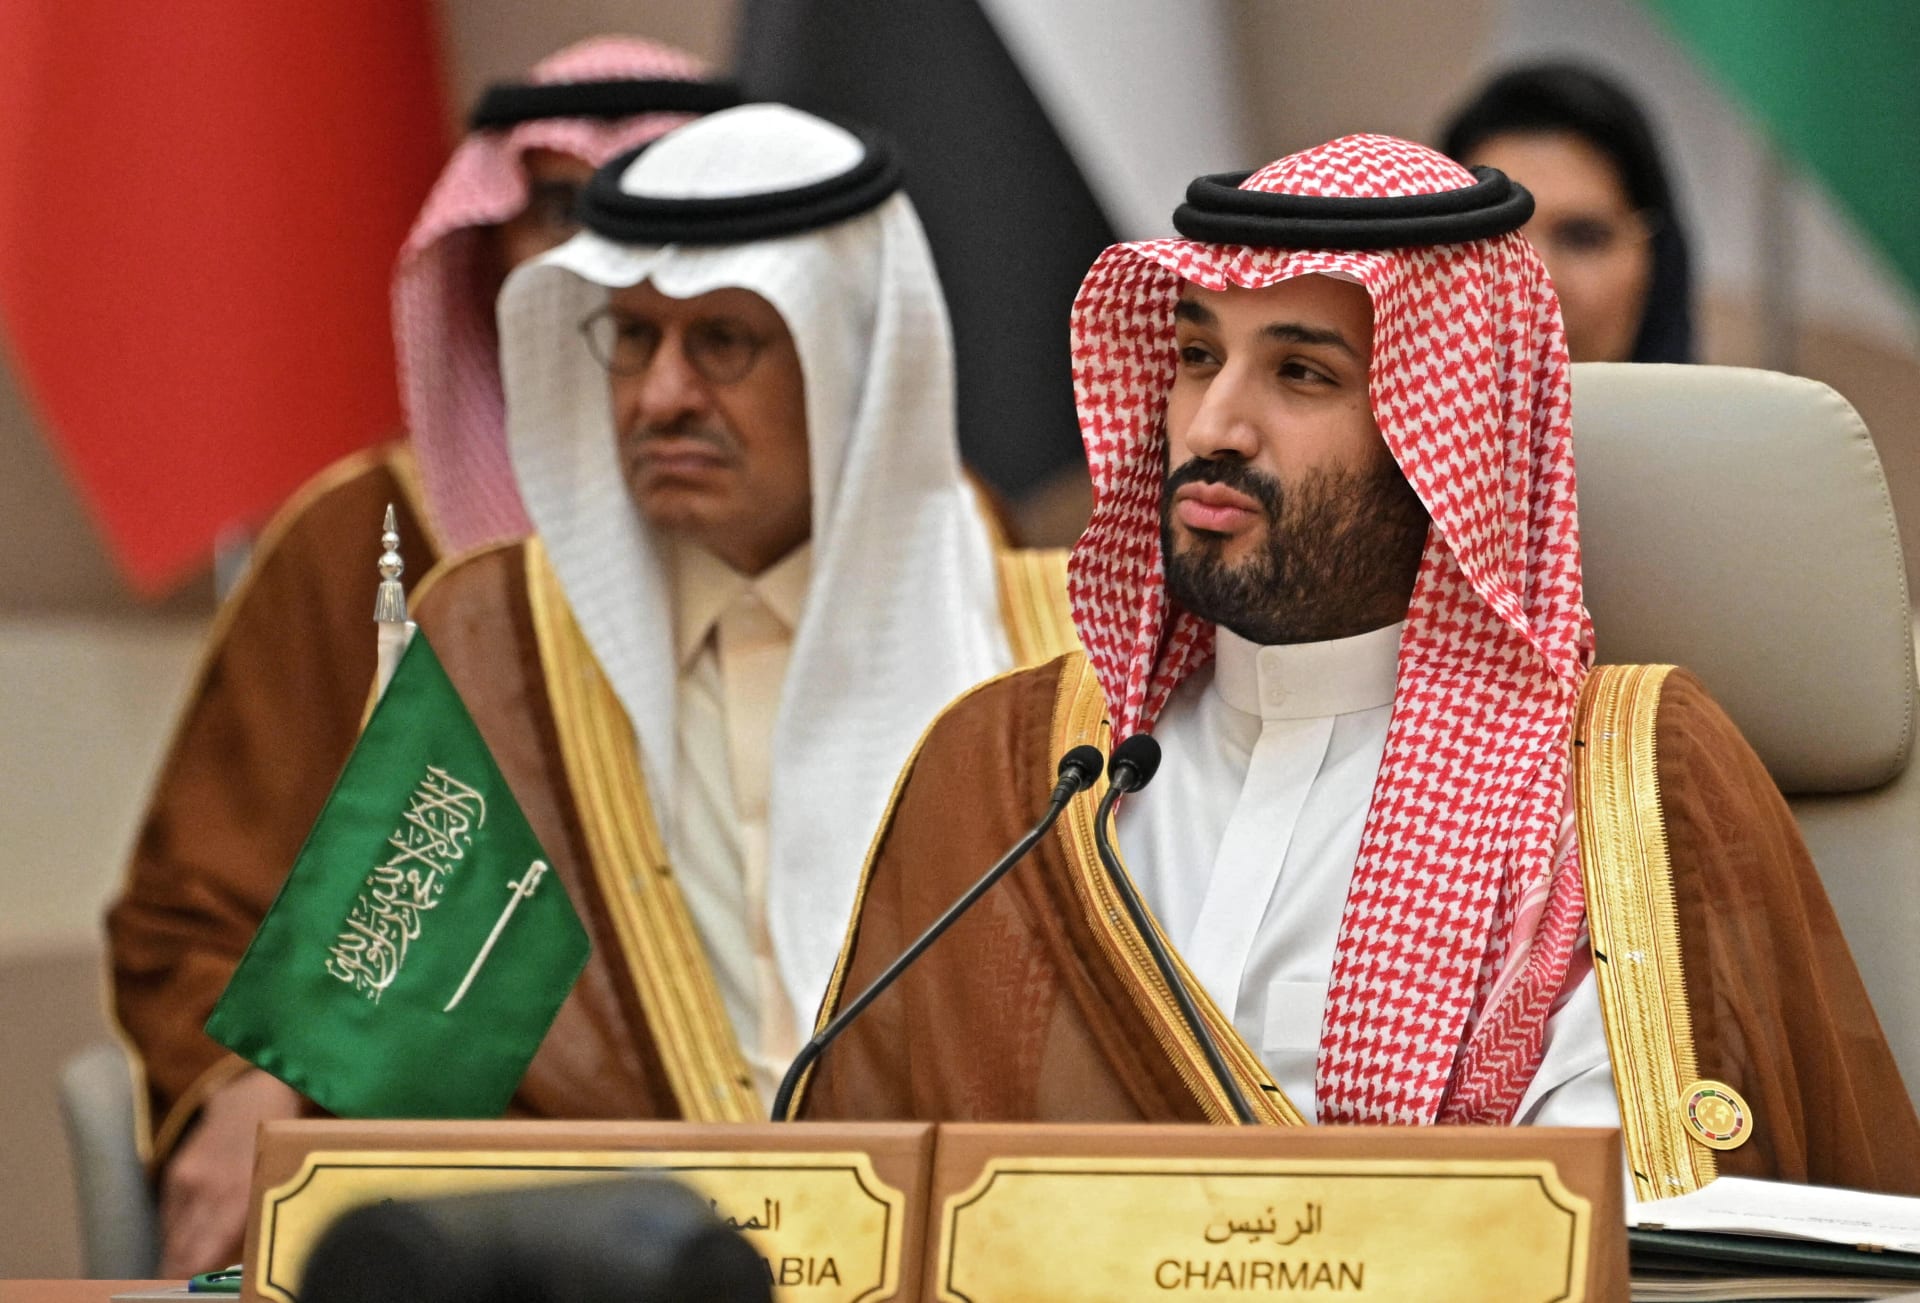 بعد مباحثات محمد سلمان وترودو.. السعودية تعلن عودة العلاقات الدبلوماسية مع كندا "لوضعها السابق"